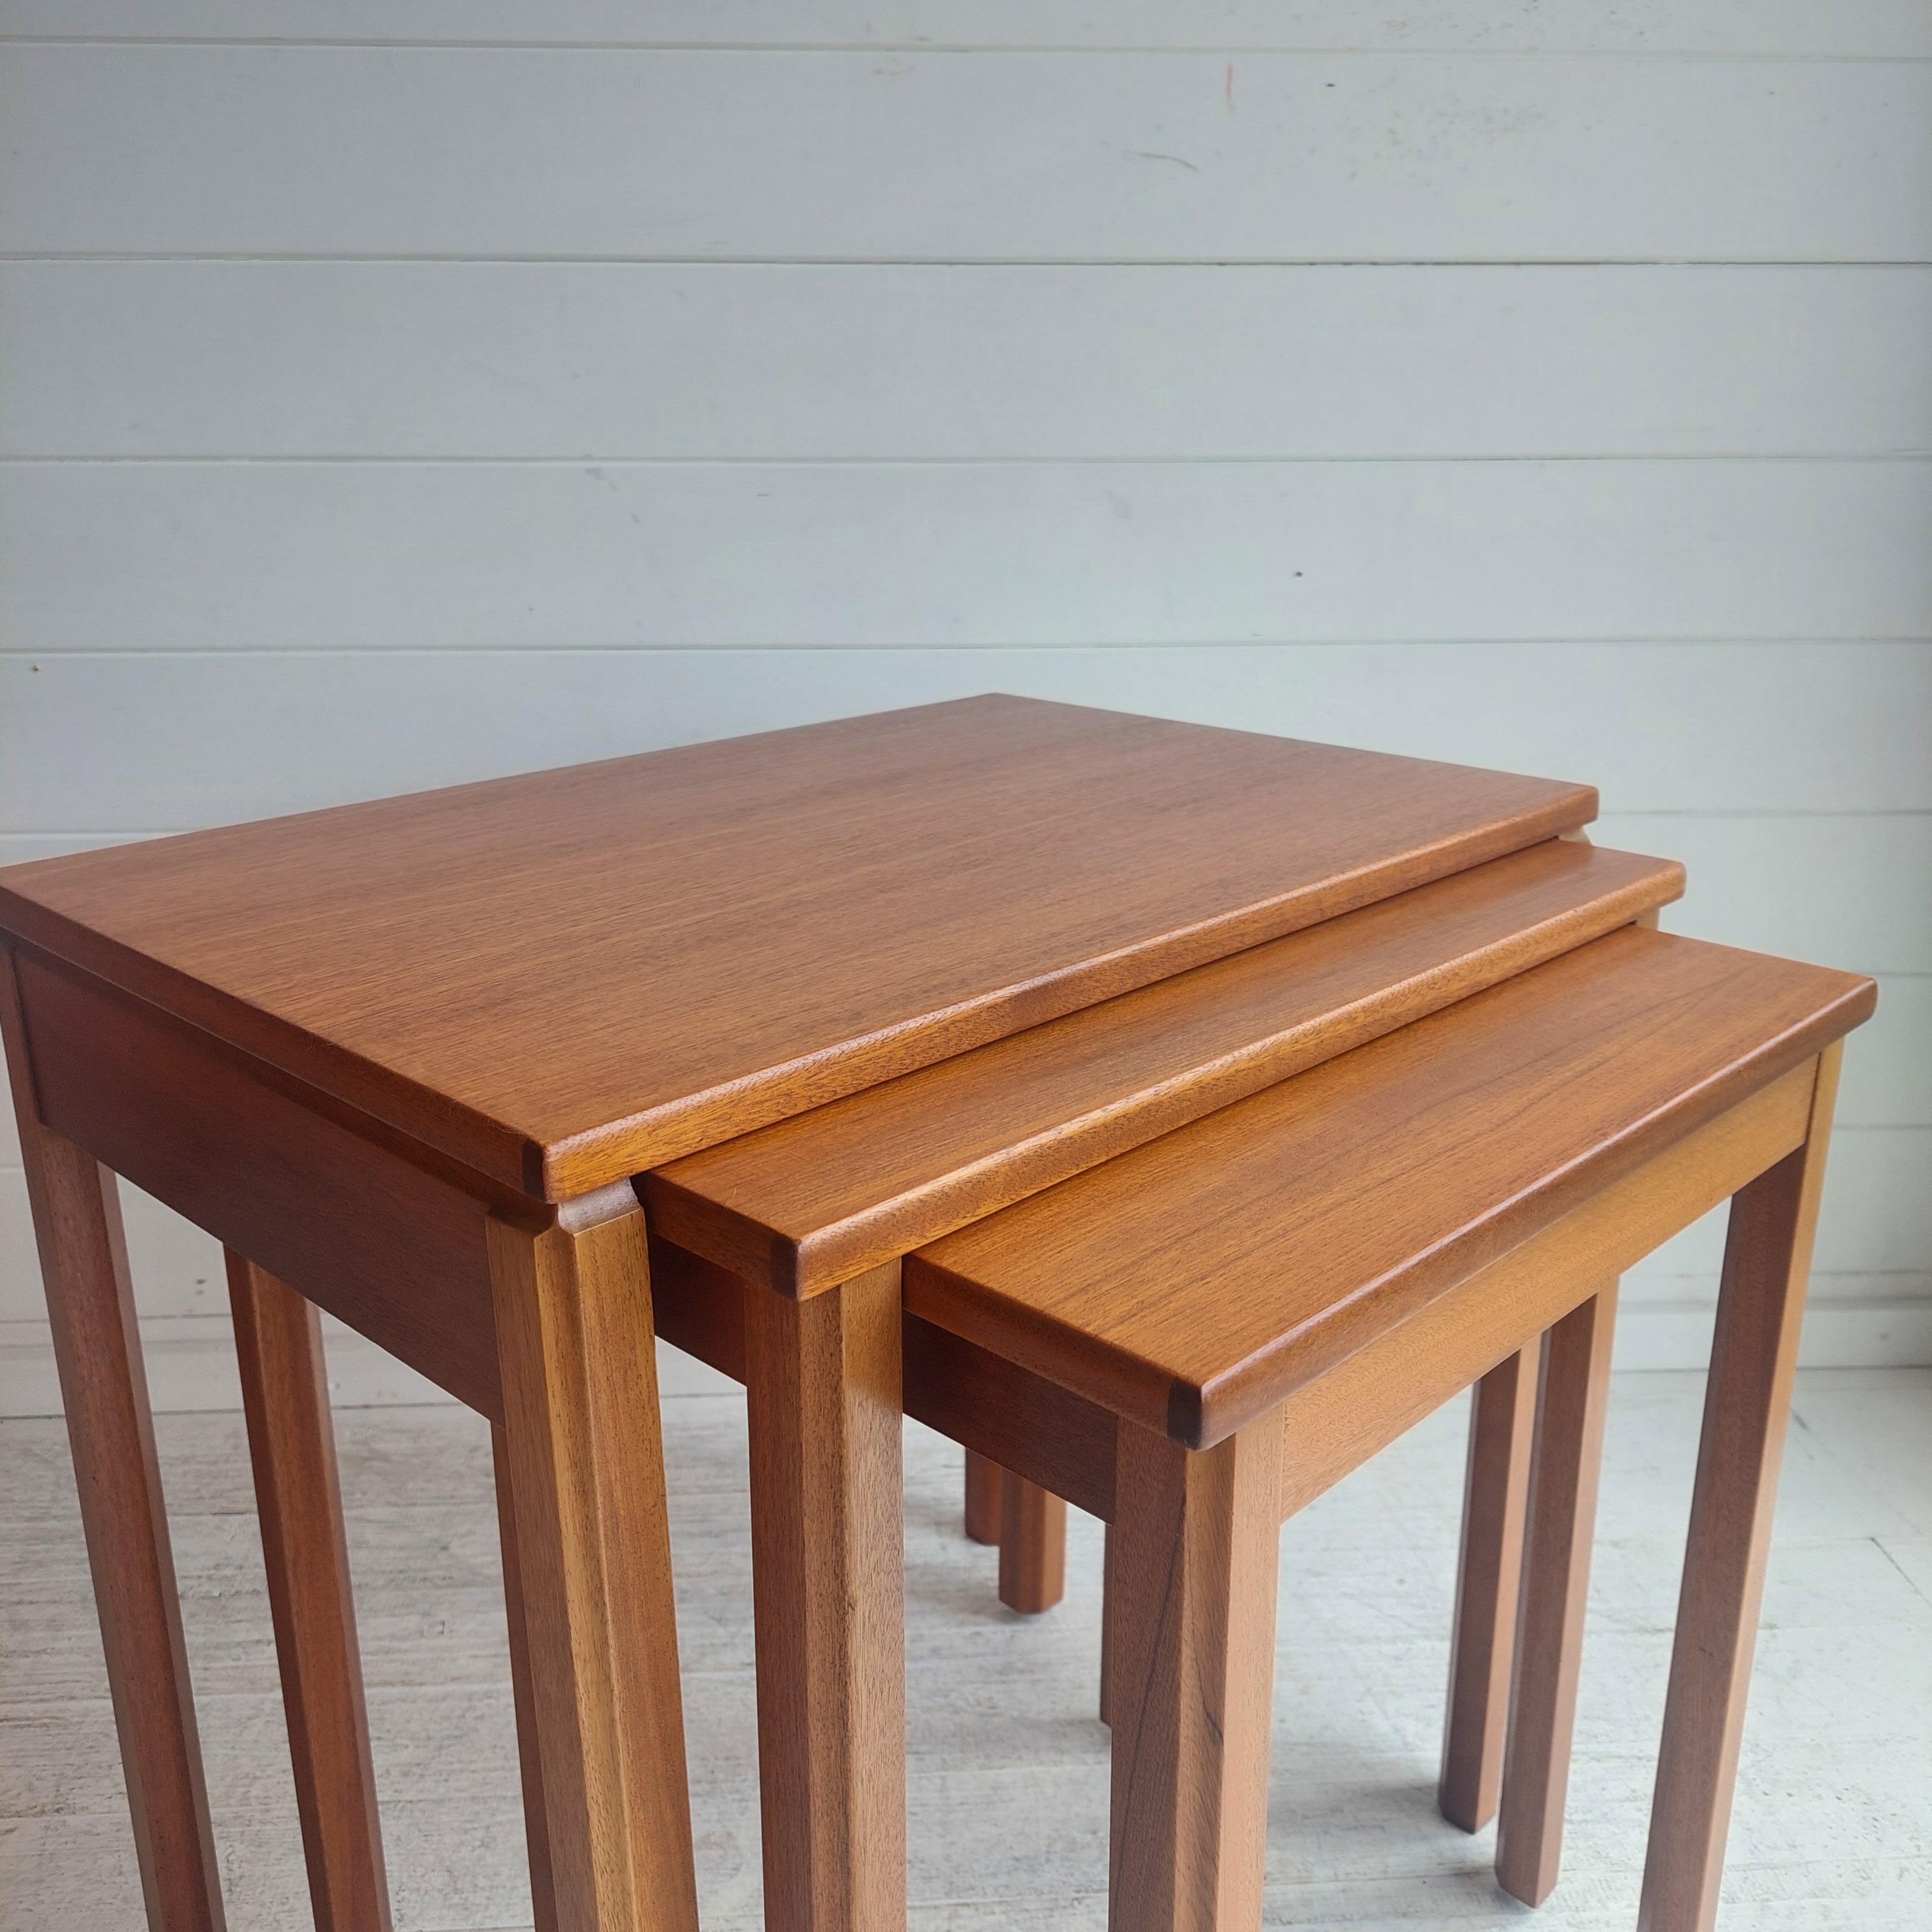 Tables en teck.
Fabriqué par A.H McIntosh & Co Ltd, Kirkcaldy Scotland, ce modèle rétro des années 1970.
Ils seraient le complément parfait d'une maison du milieu du siècle. 
Inspirées du design danois, ces tables présentent une belle teinte chaude